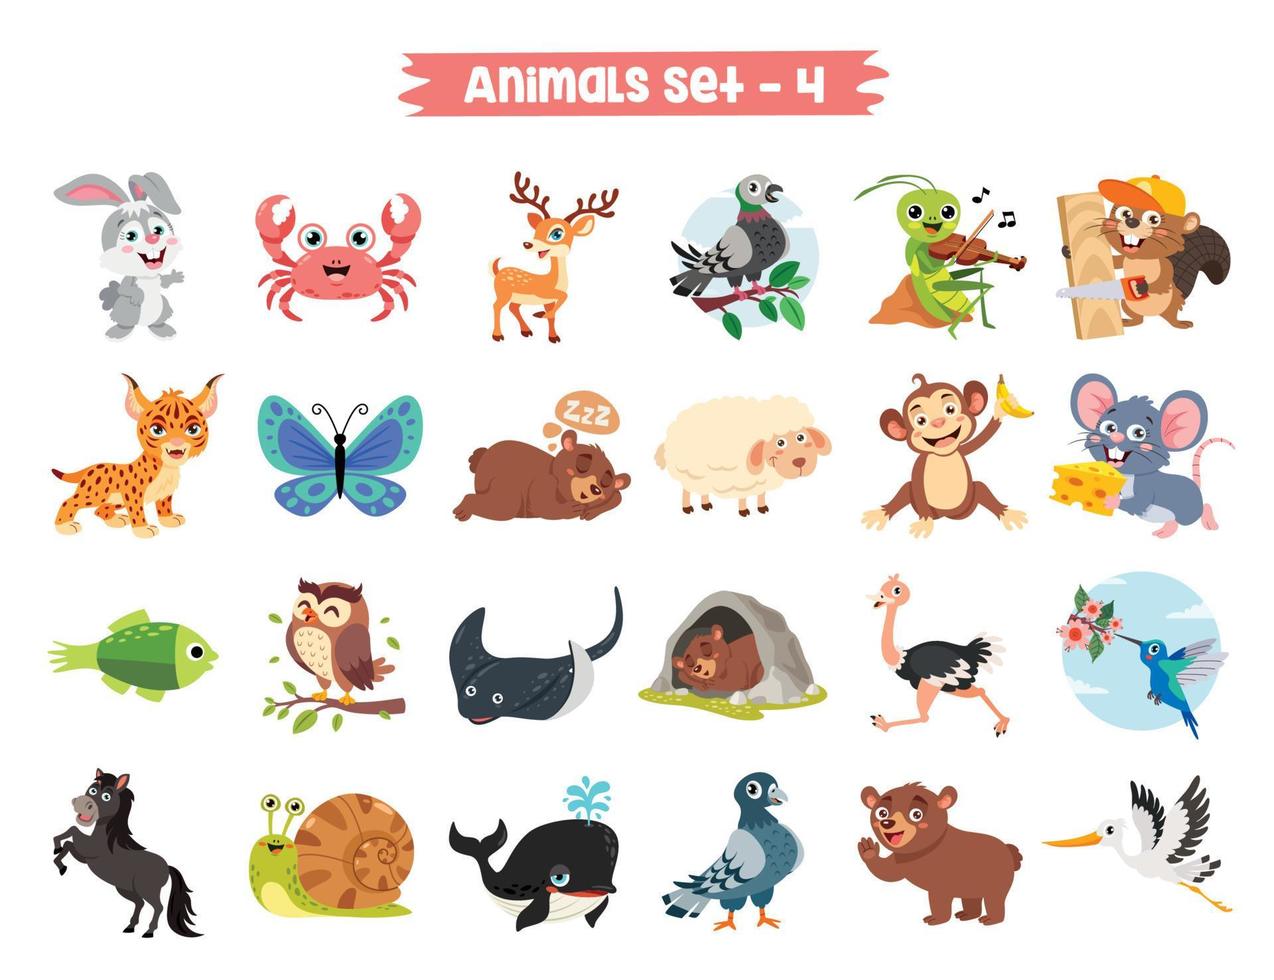 conjunto de animais fofos de desenho animado vetor